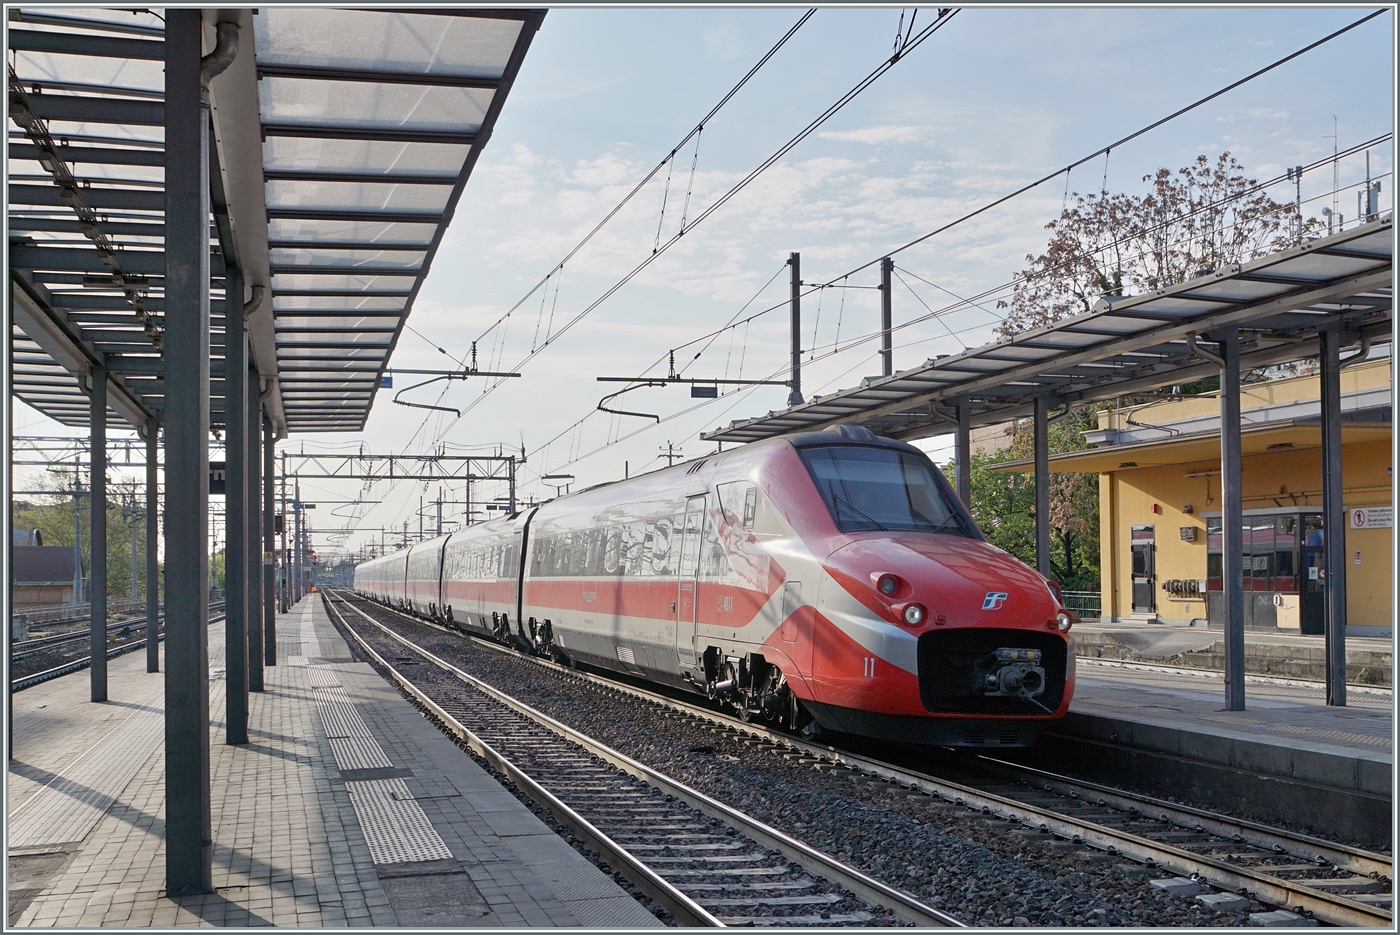 Im Gegenlicht erreicht der FS Trenitalia ETR 700 011 (ex Fyra) als Frecciarossa 8802 den Bahnhof von Parma. Der Zug ist von Ancona (ab 5:20) nach Milano (an 9:15) unterwegs und wird wie die meisten HGV-Züge der Relation Lecce - Milano erst nördlich von Fidenza auf die Schnellfahrstrecke geleitet.

18. April 2023